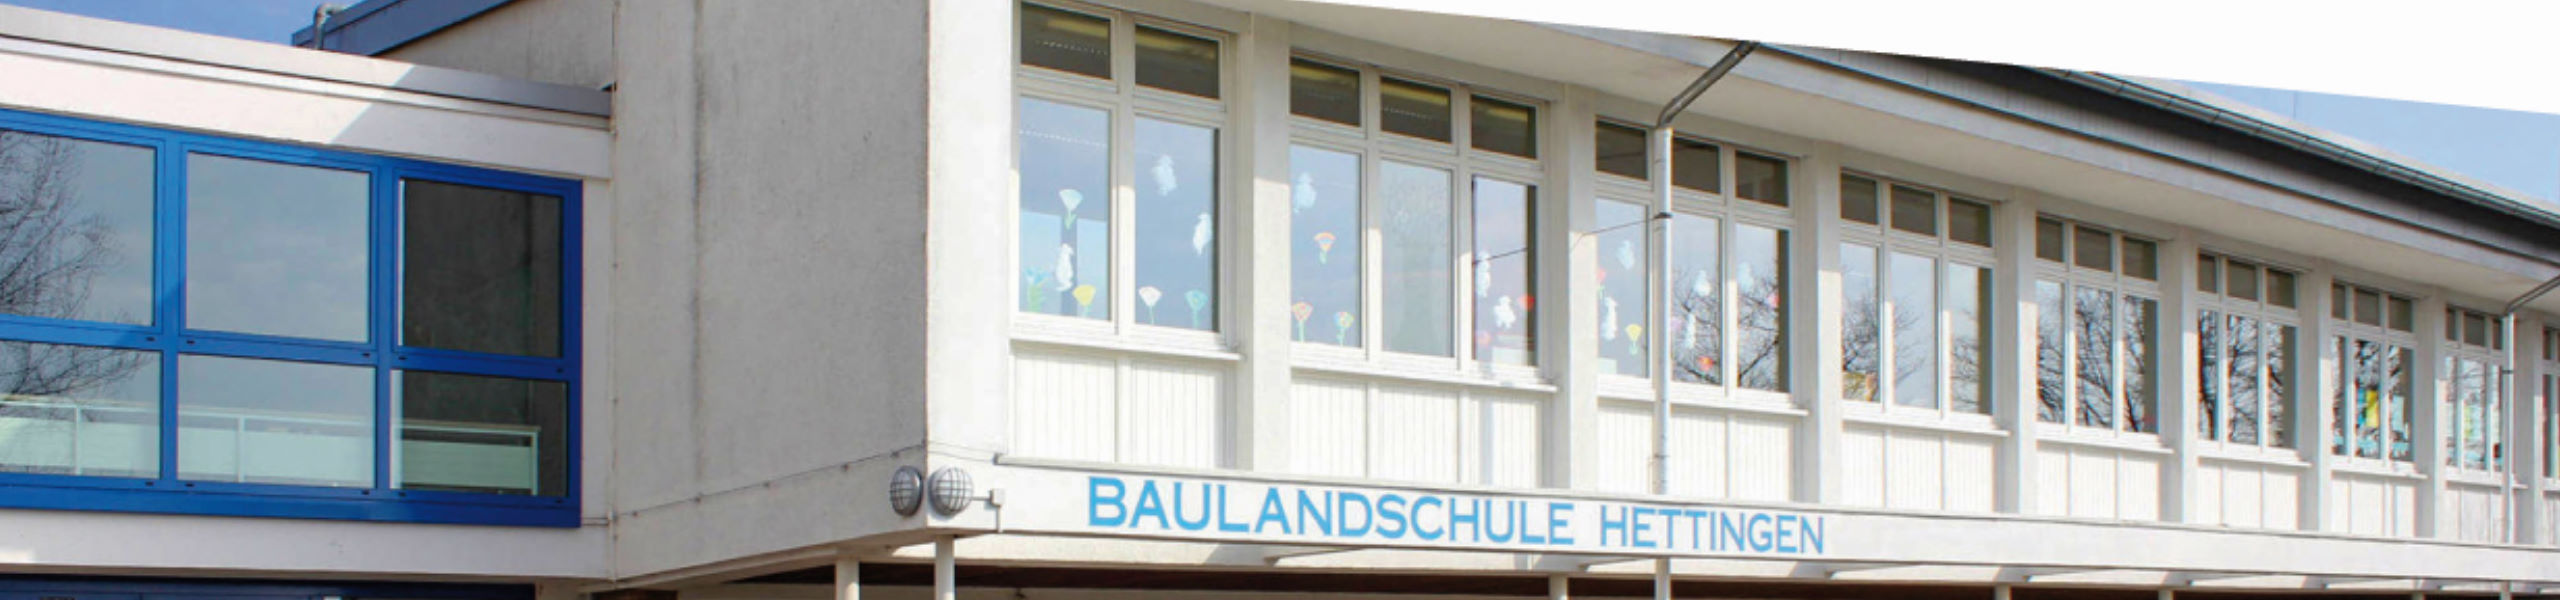 Baulandschule Hettingen - Unterricht & Ferien